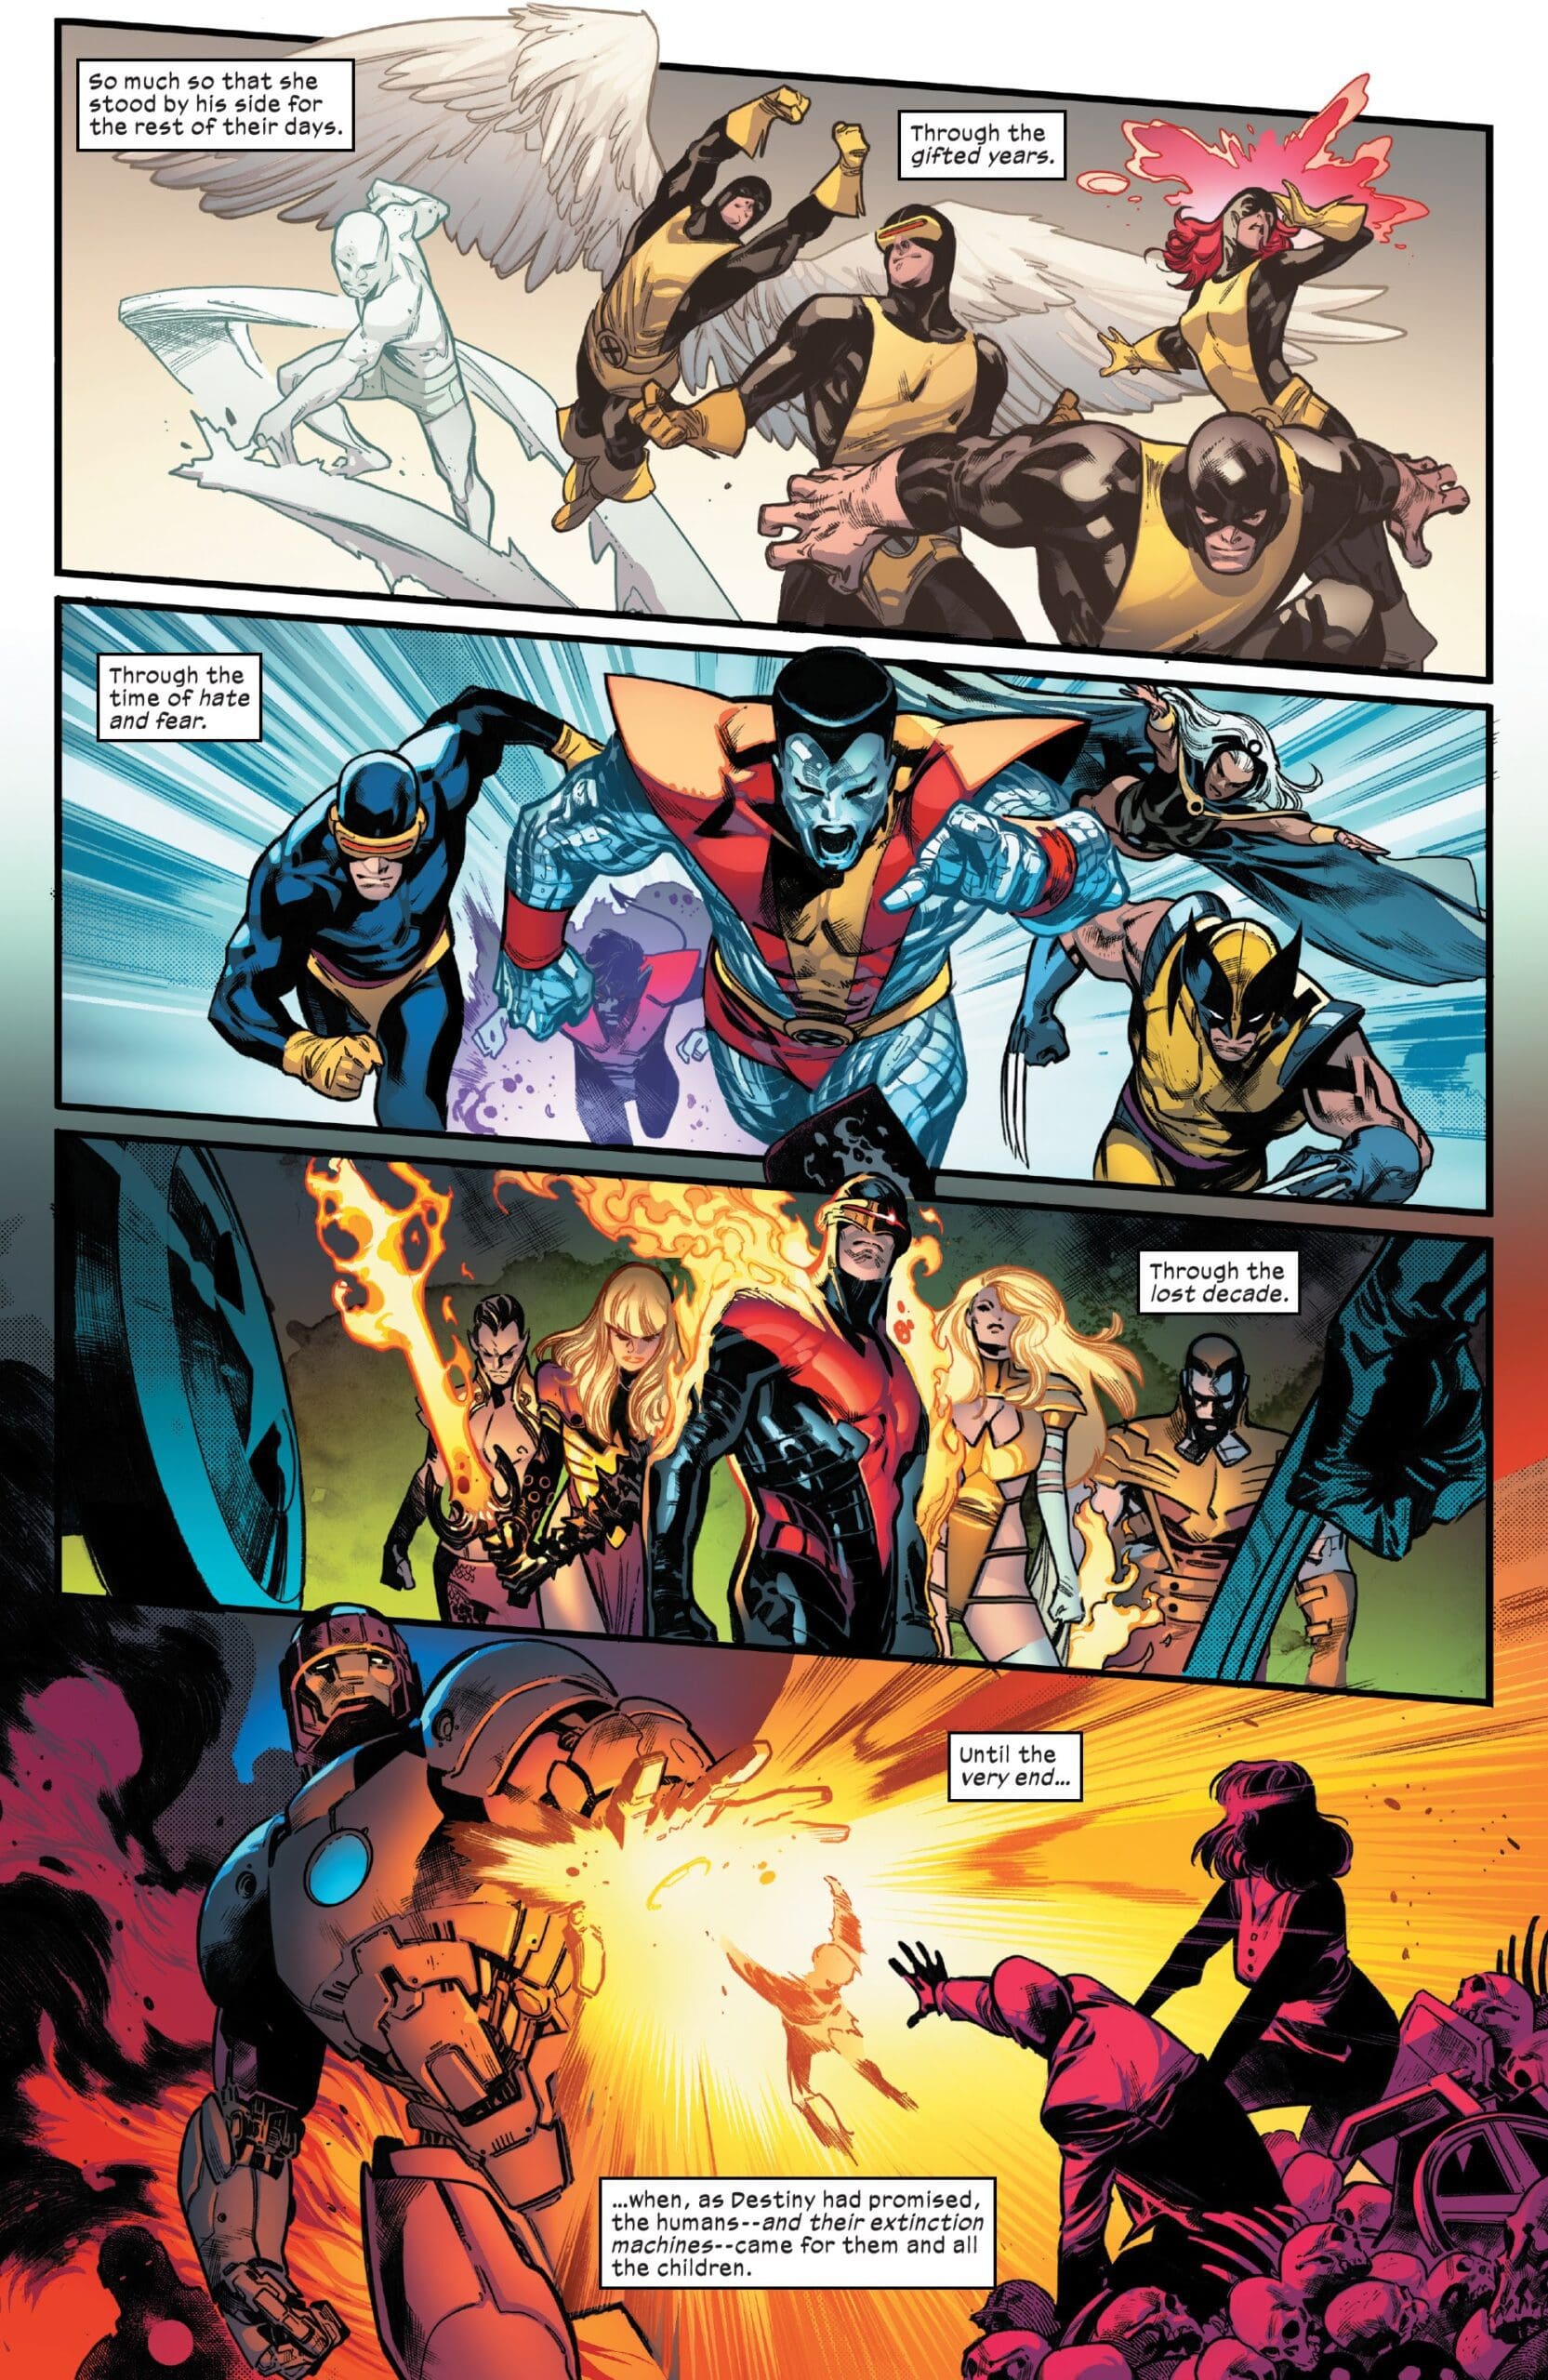 Marvel - House of X e Powers of X portano la rivoluzione 2